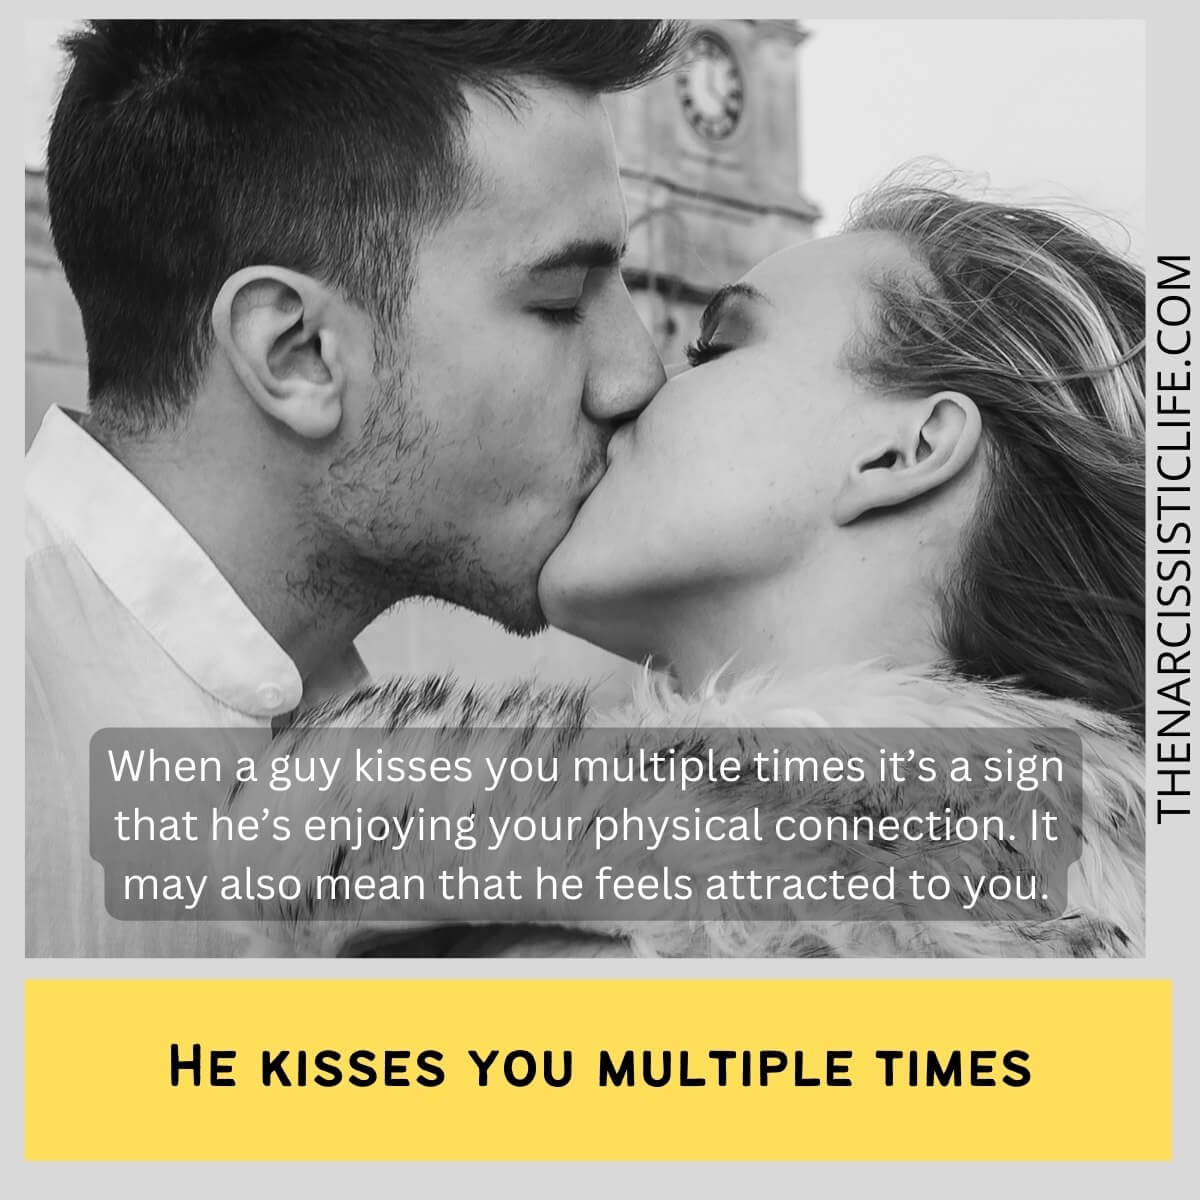 Kaj pomeni, ko te fant večkrat poljubi?